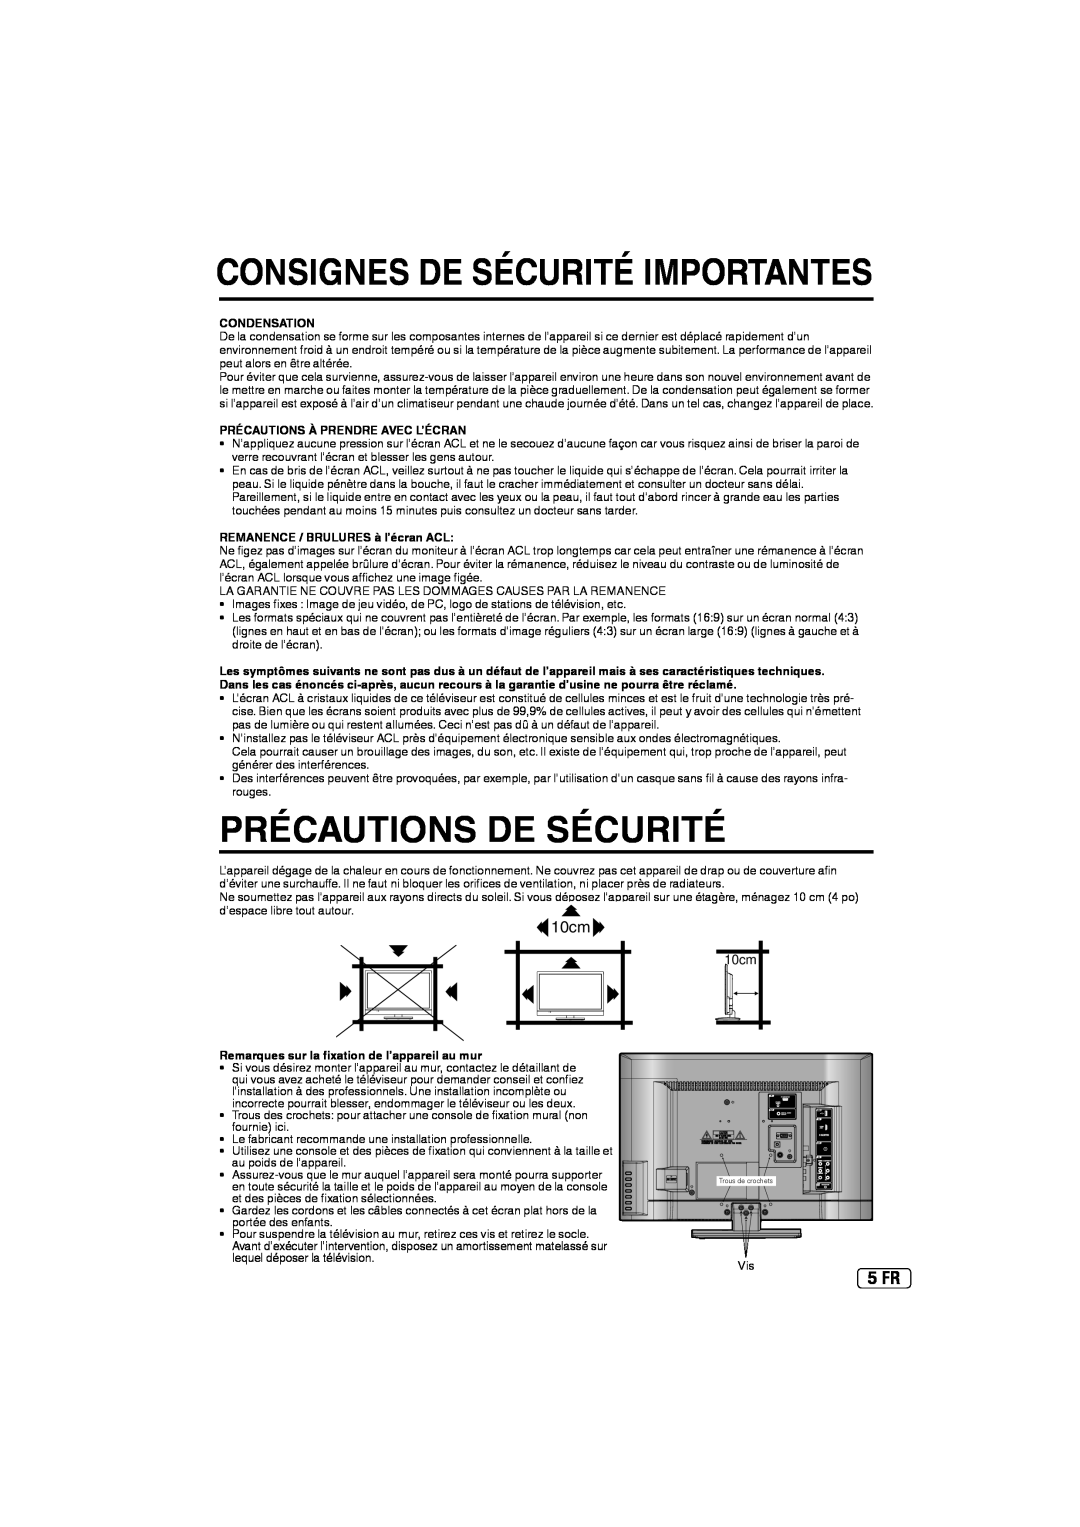 Sansui SLED2237 owner manual Précautions De Sécurité, 10cm, 5 FR, Consignes De Sécurité Importantes, Condensation 